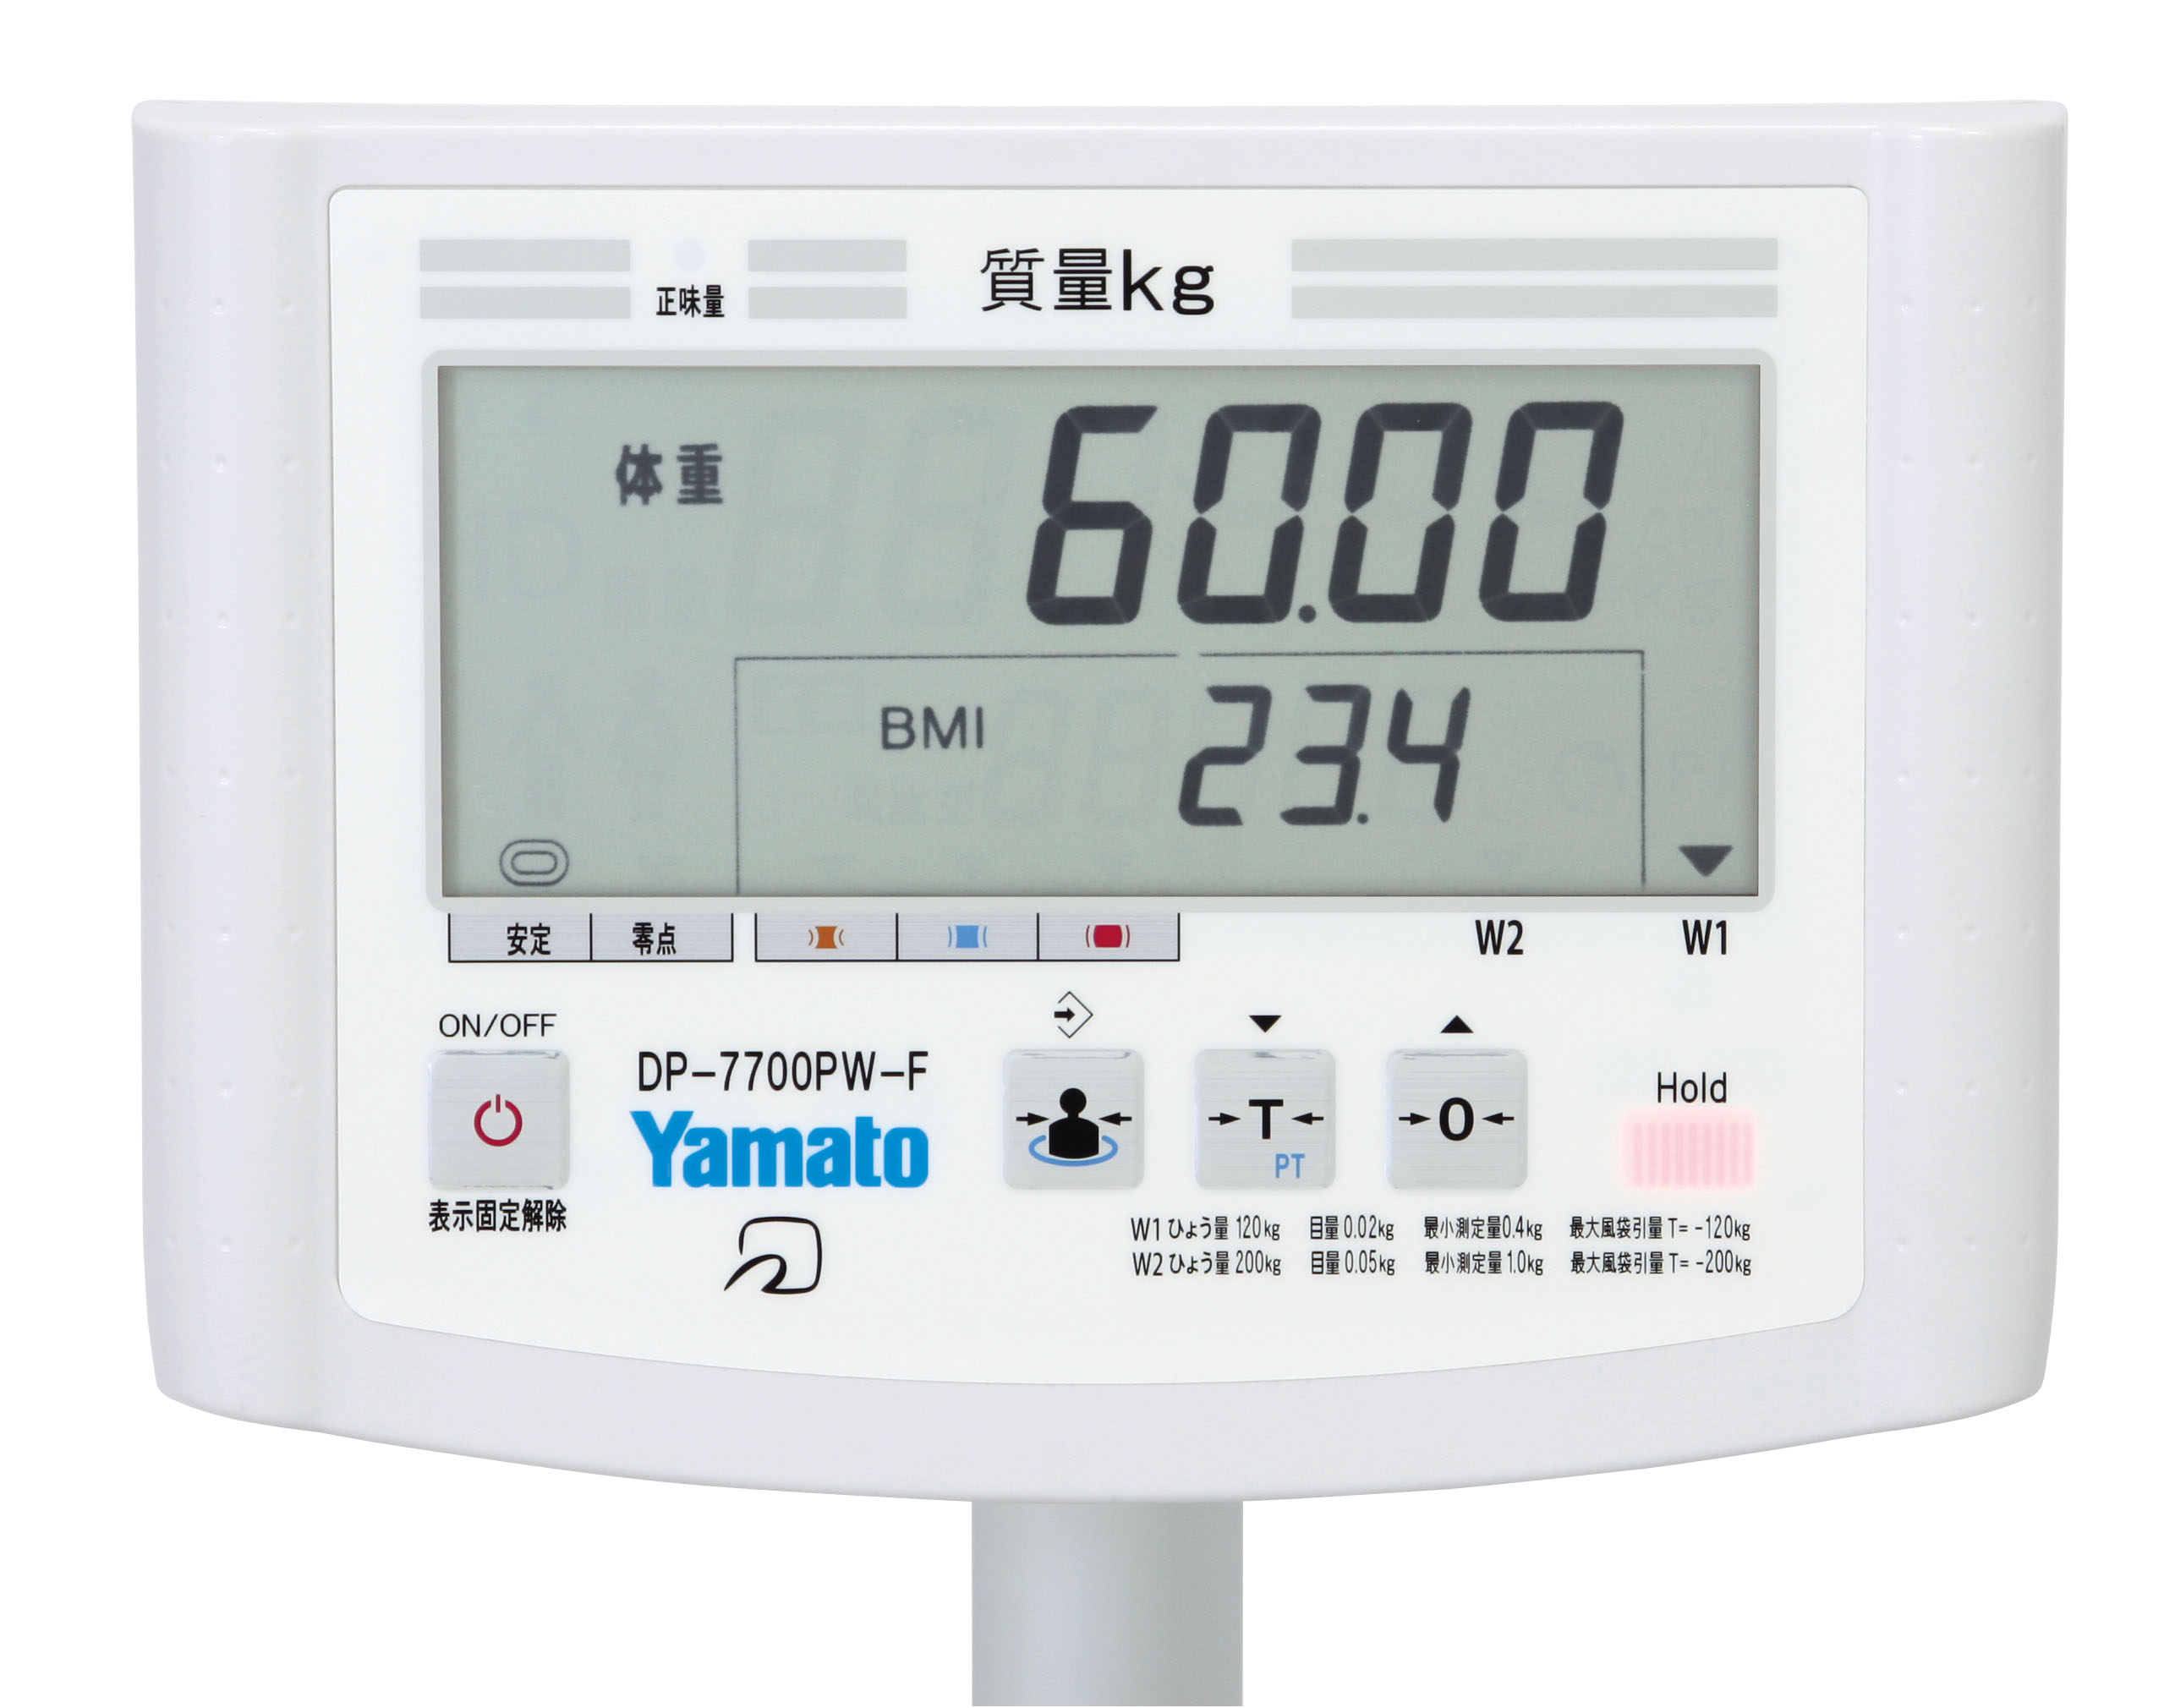 柔らかい いつでも家電専門店デジタル体重計 検定品 DP-7700PW-F 規格